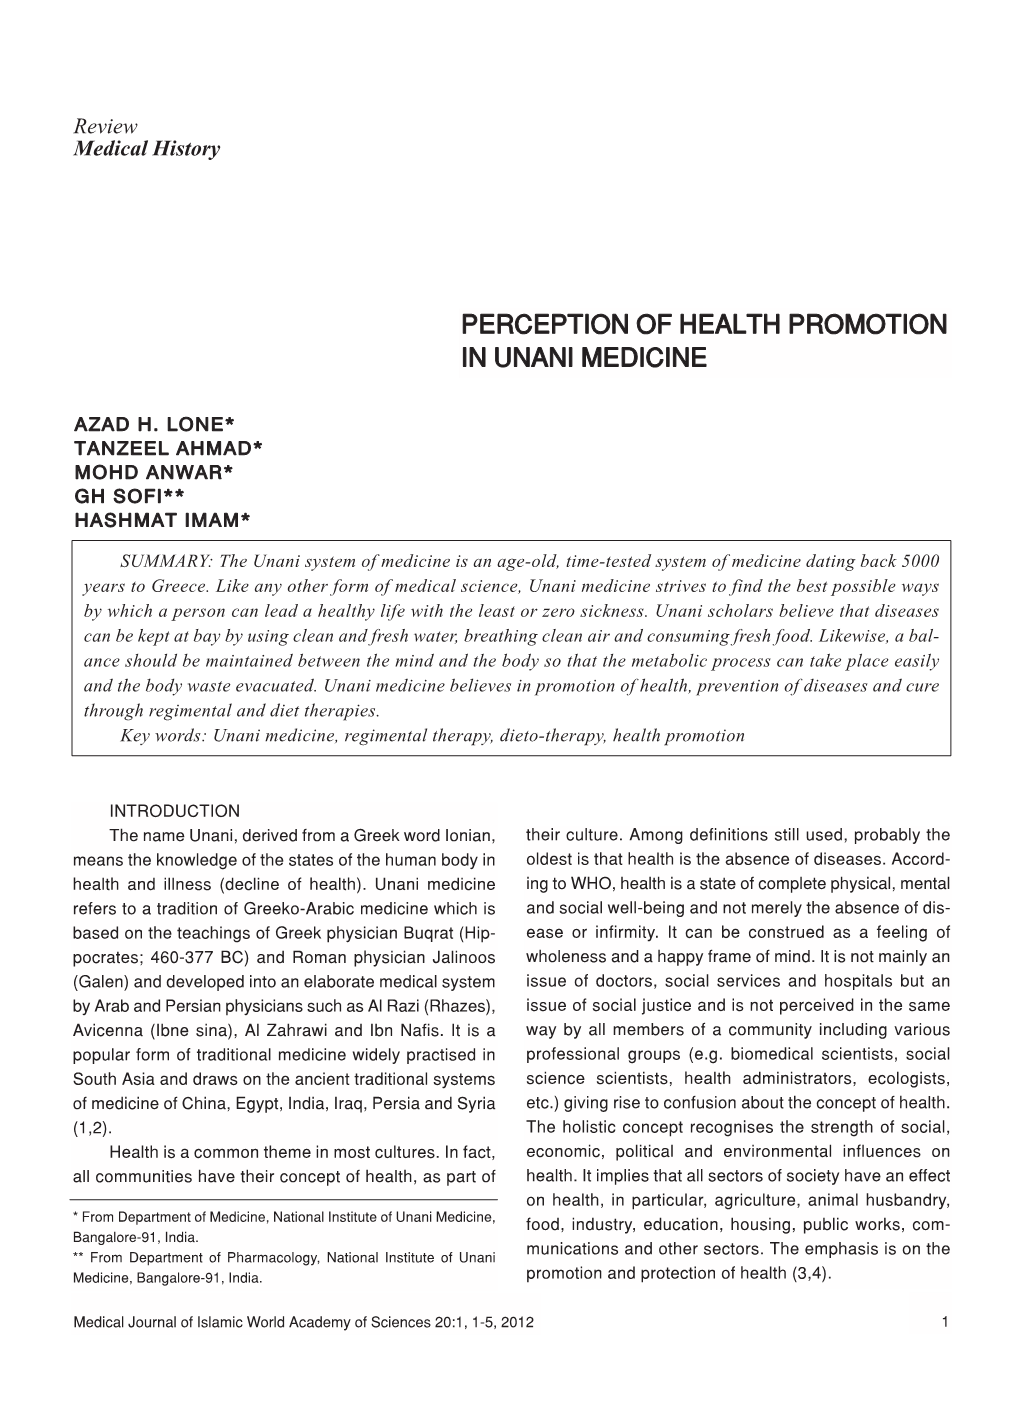 Perception of Health Promotion in Unani Medicine